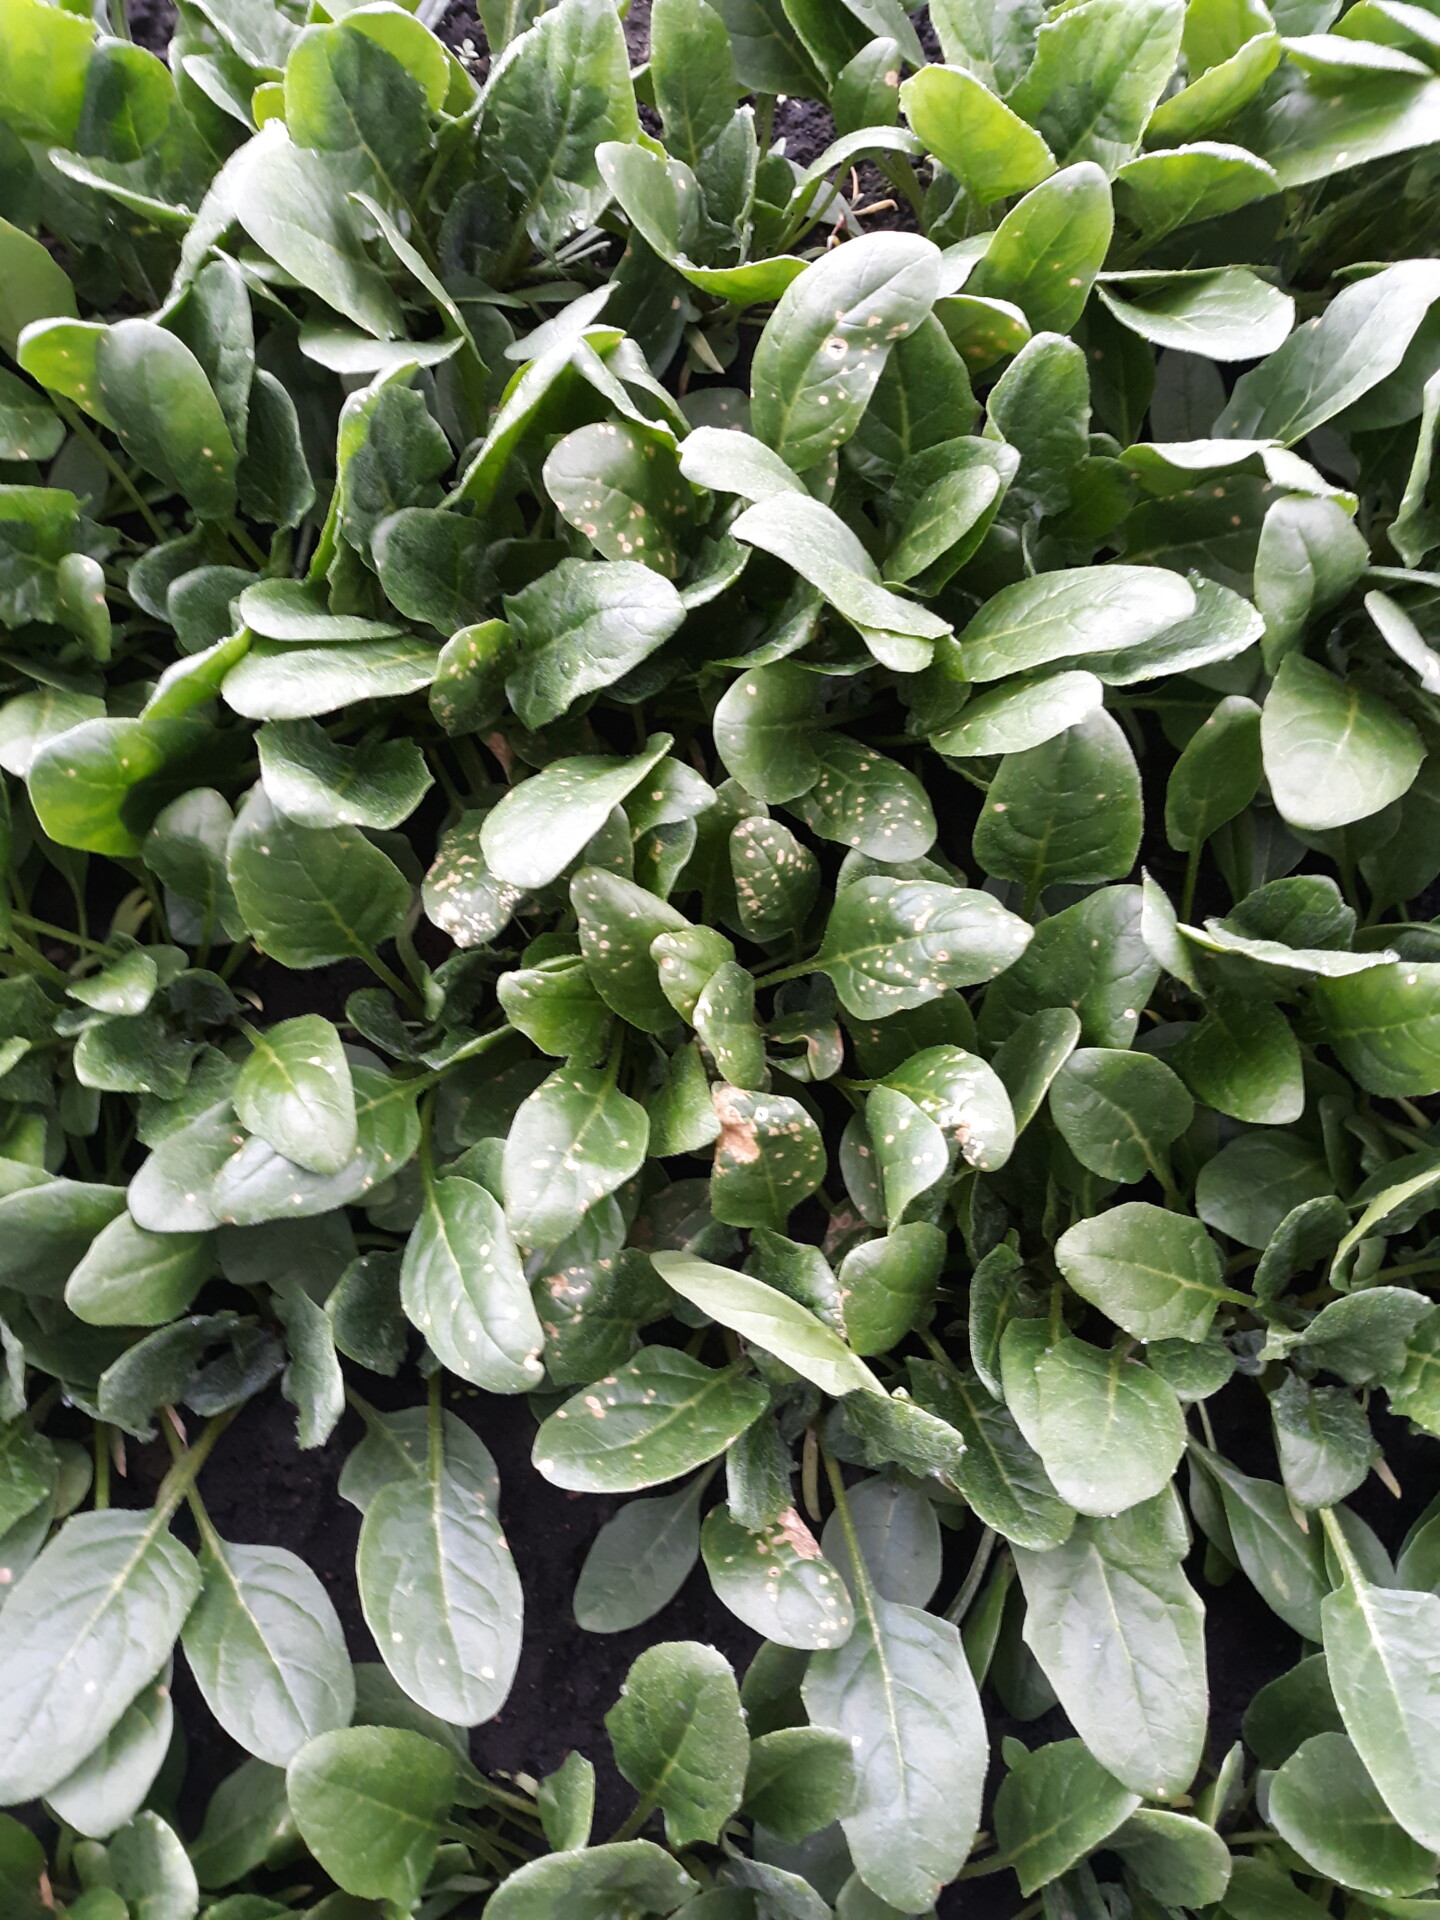 Figure 1. Cladosporium leaf spot of spinach.